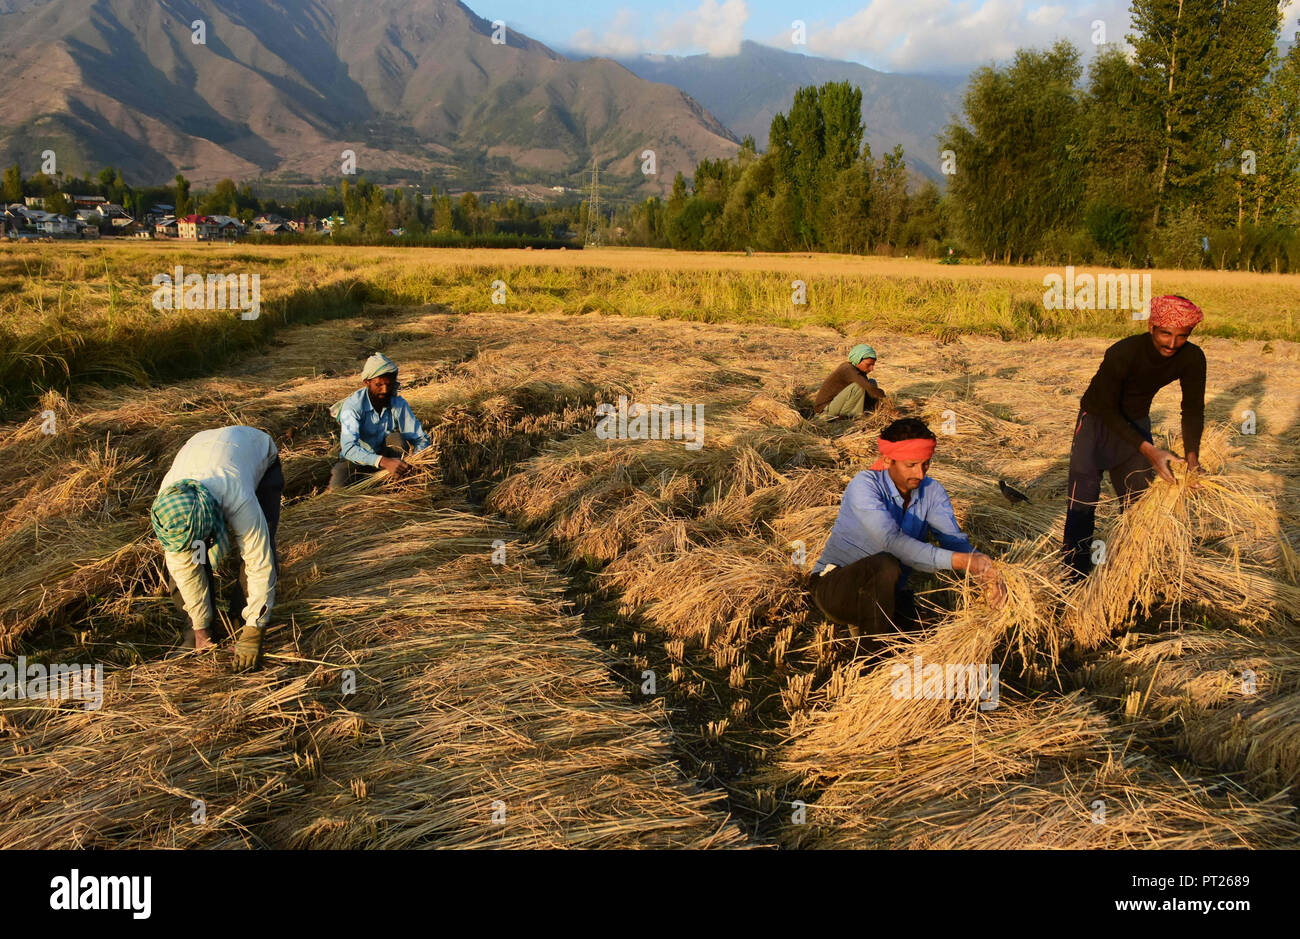 28 septembre 2018 - Non-travailleurs locaux de riz de la récolte par coupe dans les tiges de riz en rizières dans la banlieue de Srinagar, dans le Cachemire sous administration indienne le 28 septembre 2018. Le riz est l'aliment de base dans la vallée du Cachemire et est toujours la principale culture cultivée dans la région même si la fréquence des sécheresses et des précipitations plus rares ainsi que des infrastructures d'irrigation limitée ont réduit le rendement des cultures de riz cette année. La saison d'automne marque la période de récolte de riz au Cachemire où la culture du riz est aussi partie intégrante du patrimoine culturel de l'Etat (crédit Image : © Muzamil Matto Banque D'Images